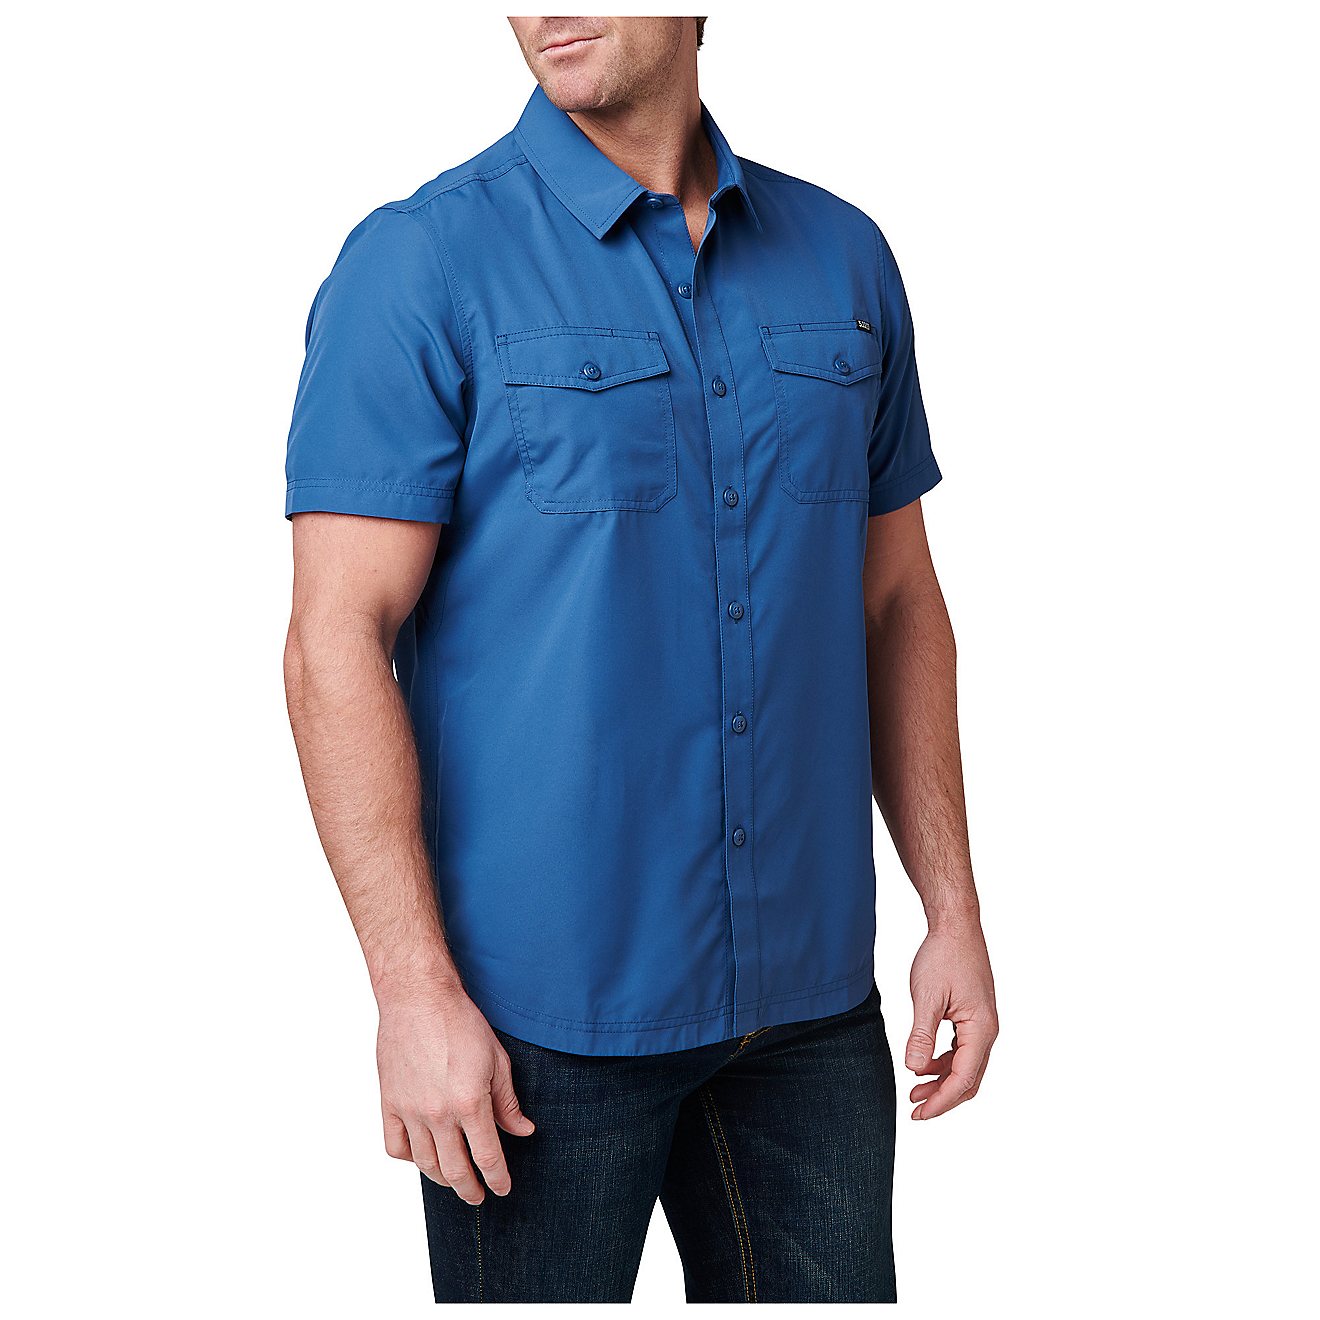 5.11 Men's Marksman Short Sleeve Shirt | Free Shipping at Academy